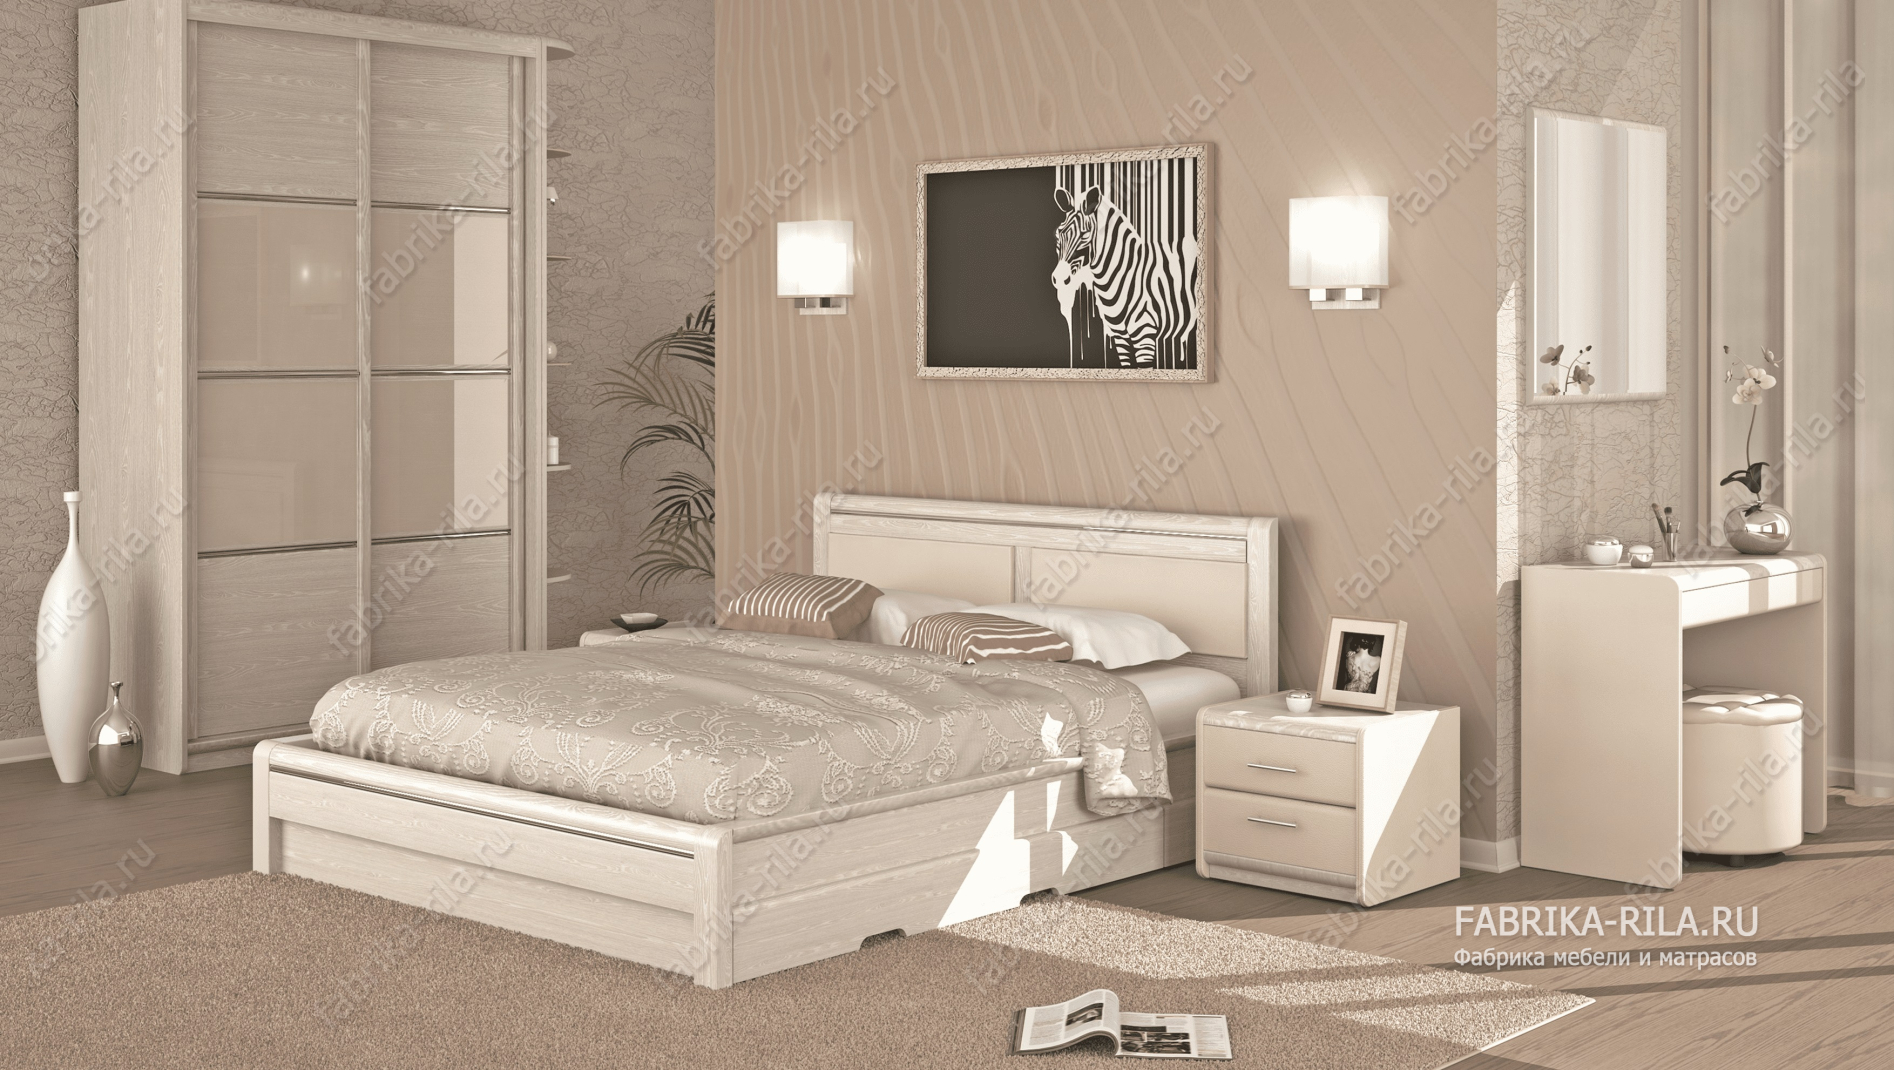 Кровать Okaeri 5 — 90x190 см. из сосны